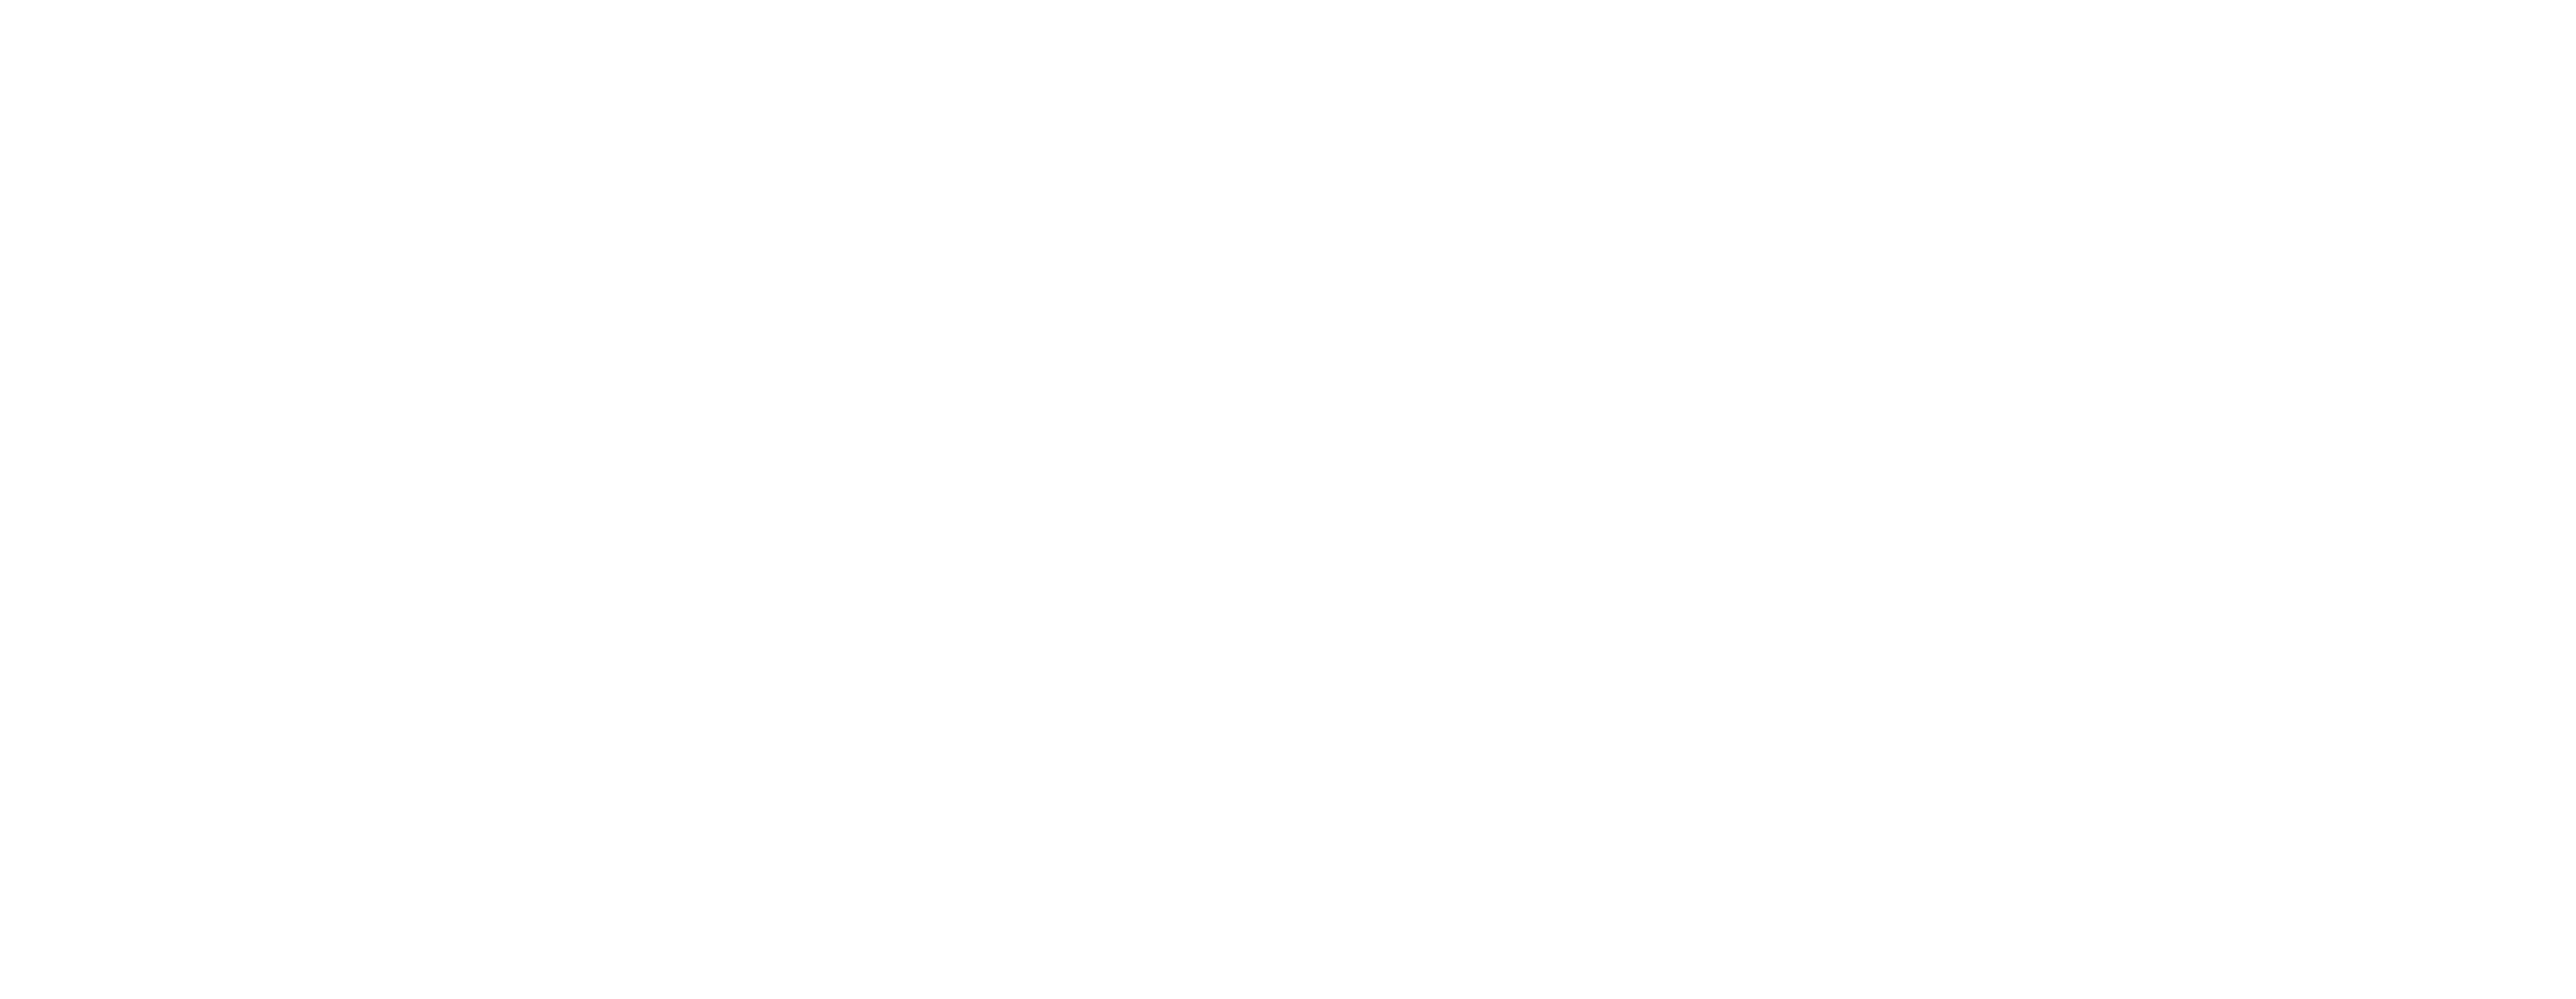 4 Horsemen: Apocalypse logo